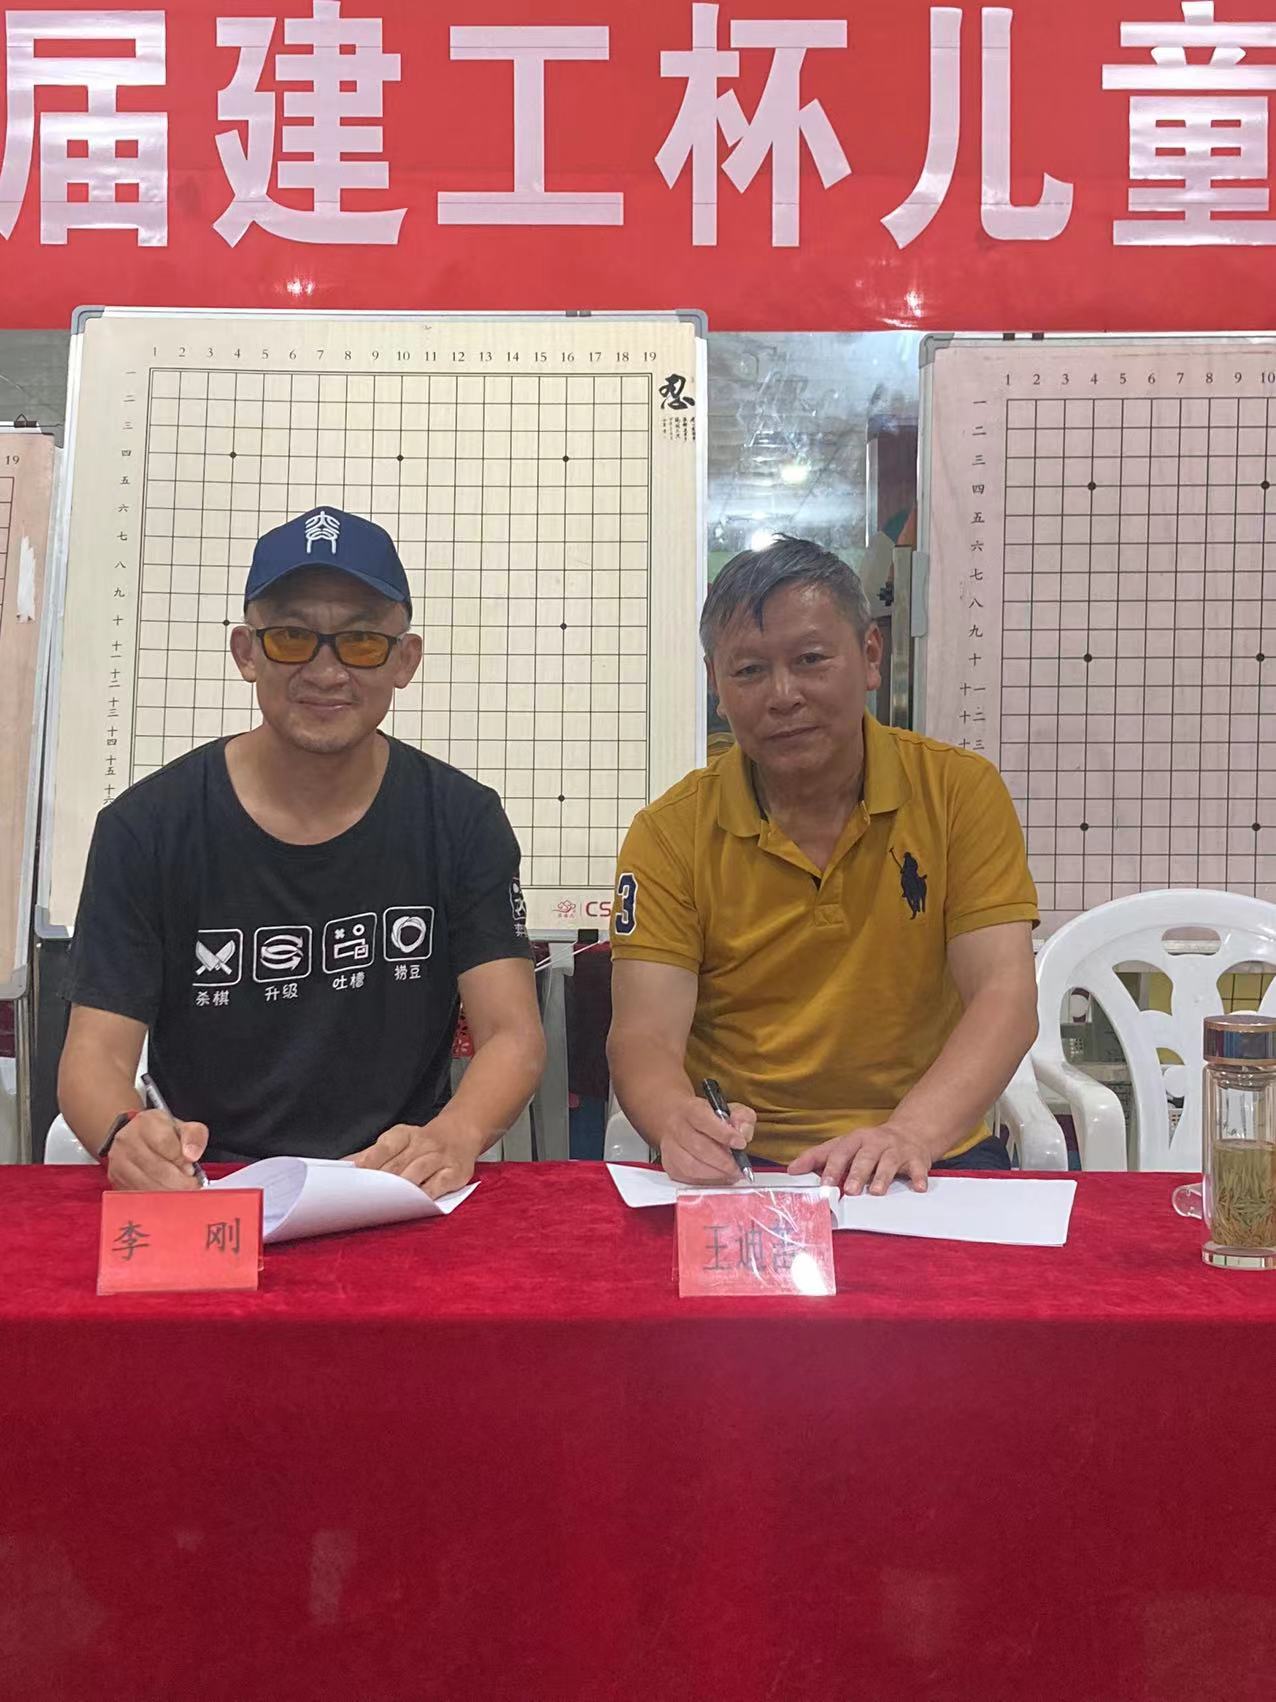 贵州省围棋协会与弈客围棋签署战略合作协议